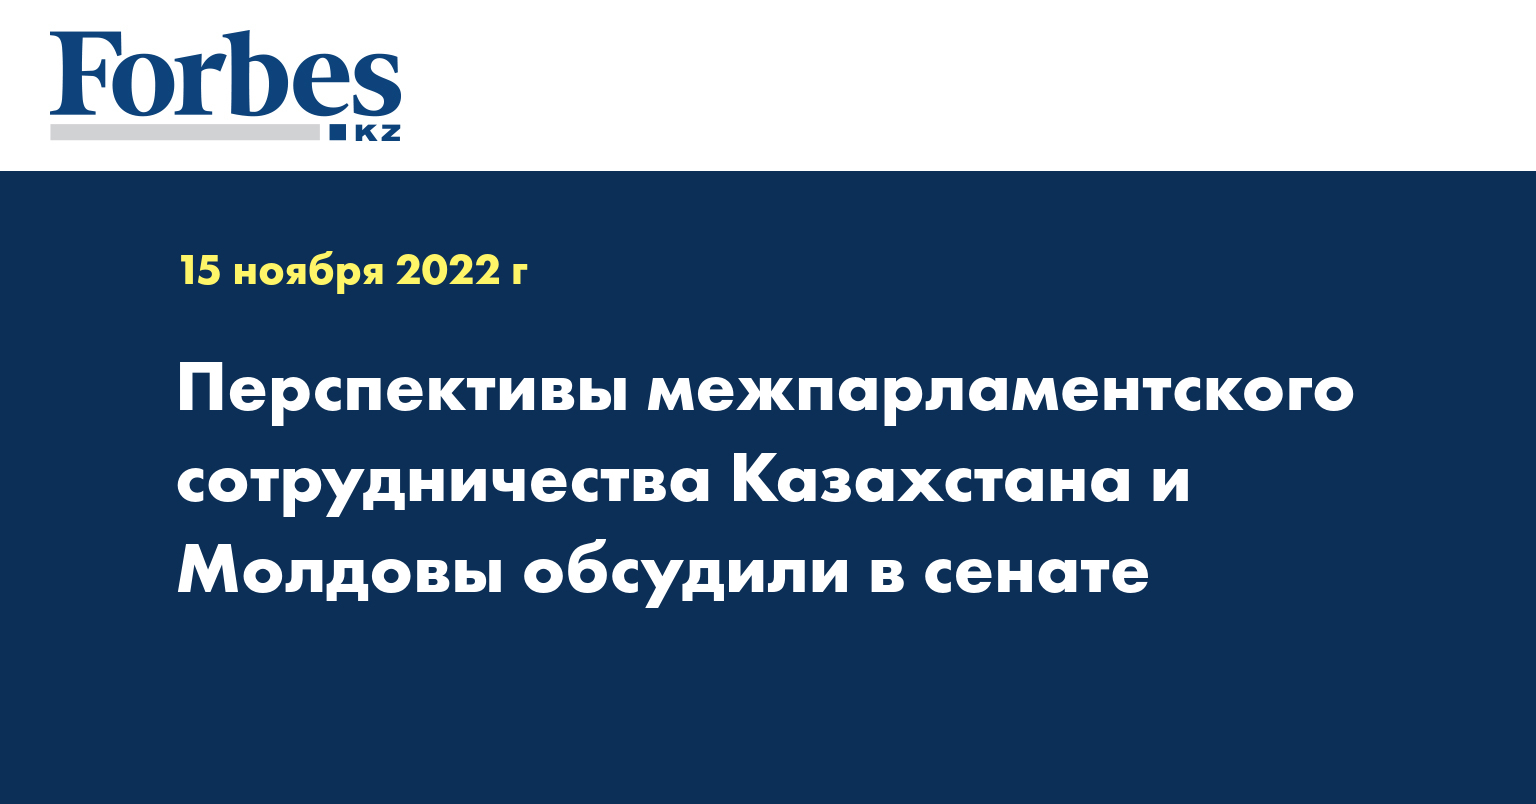 Перспективы межпарламентского сотрудничества Казахстана и Молдовы обсудили в сенате